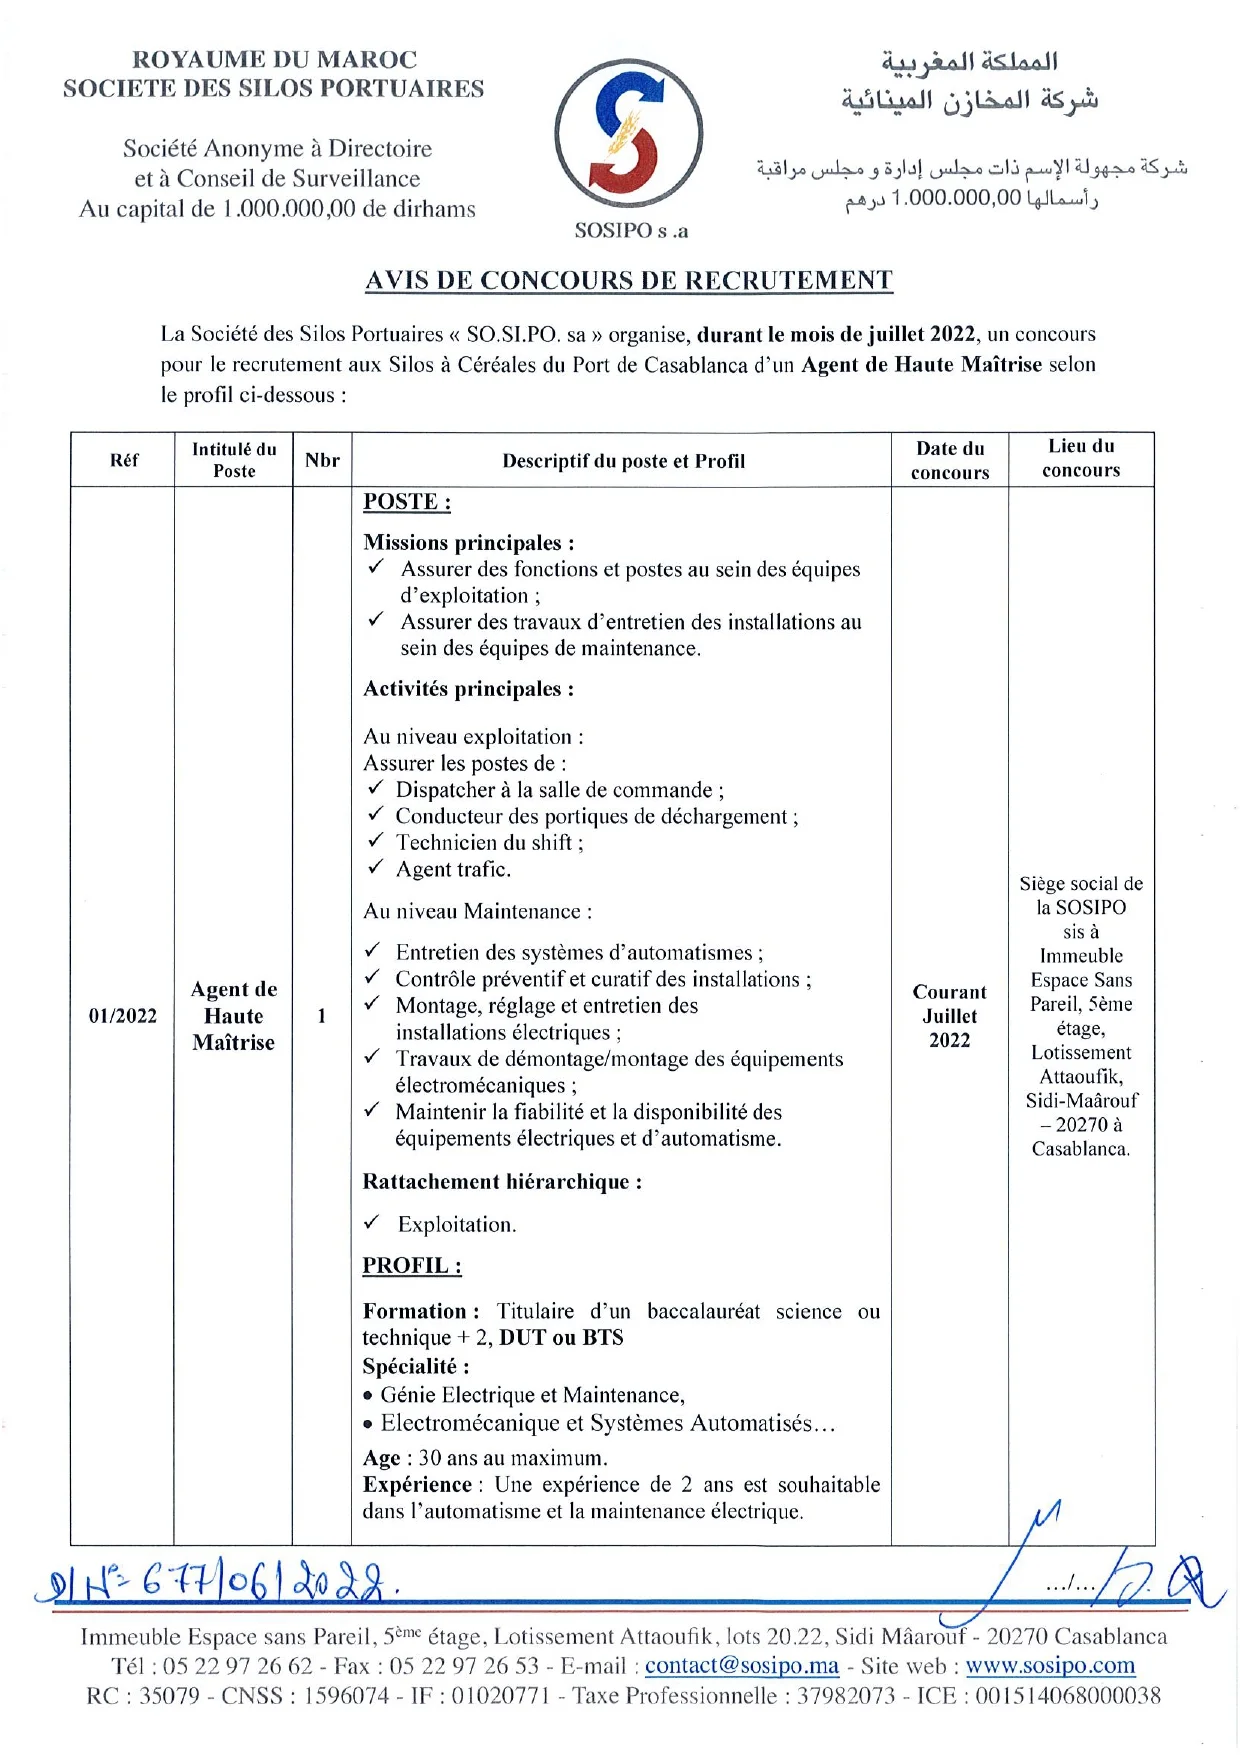 Concours de recrutement de AGENT DE MAITRISE (1 poste) à la Société des Silos Portuaires (SOSIPO)